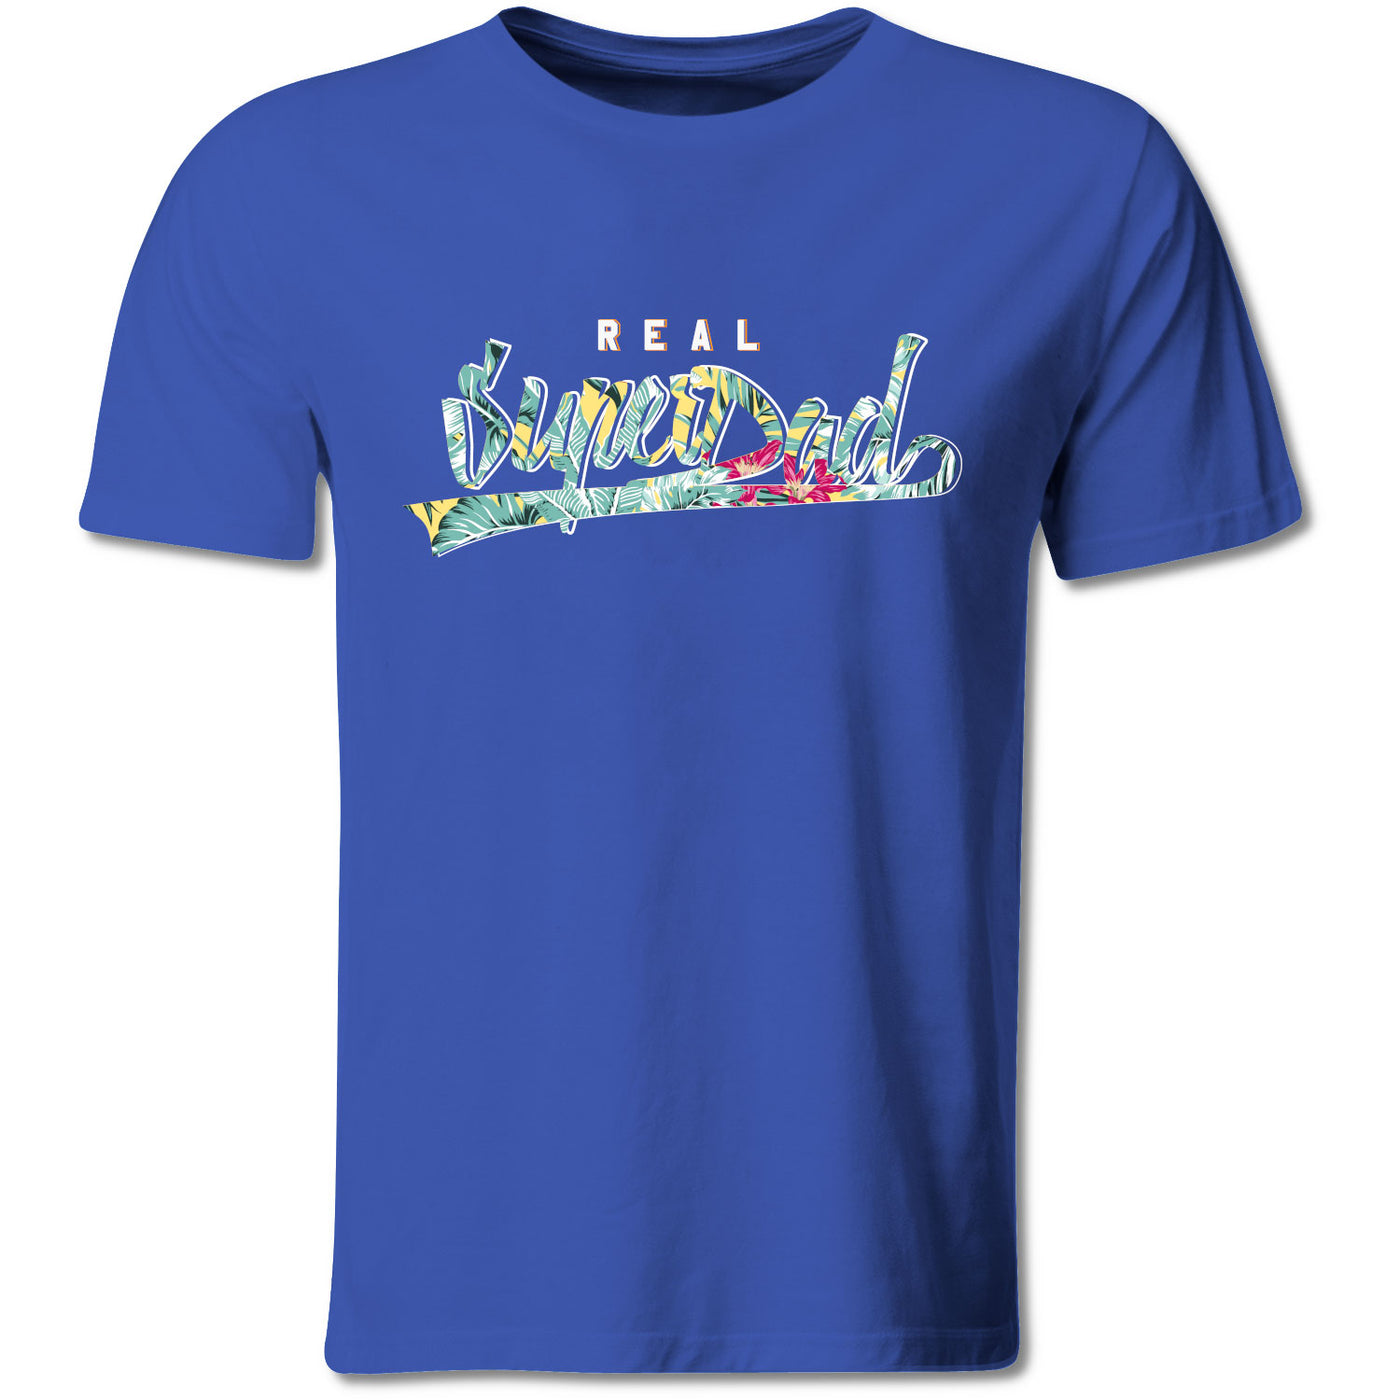 real-super-dad-shirt-blau-dd128mts